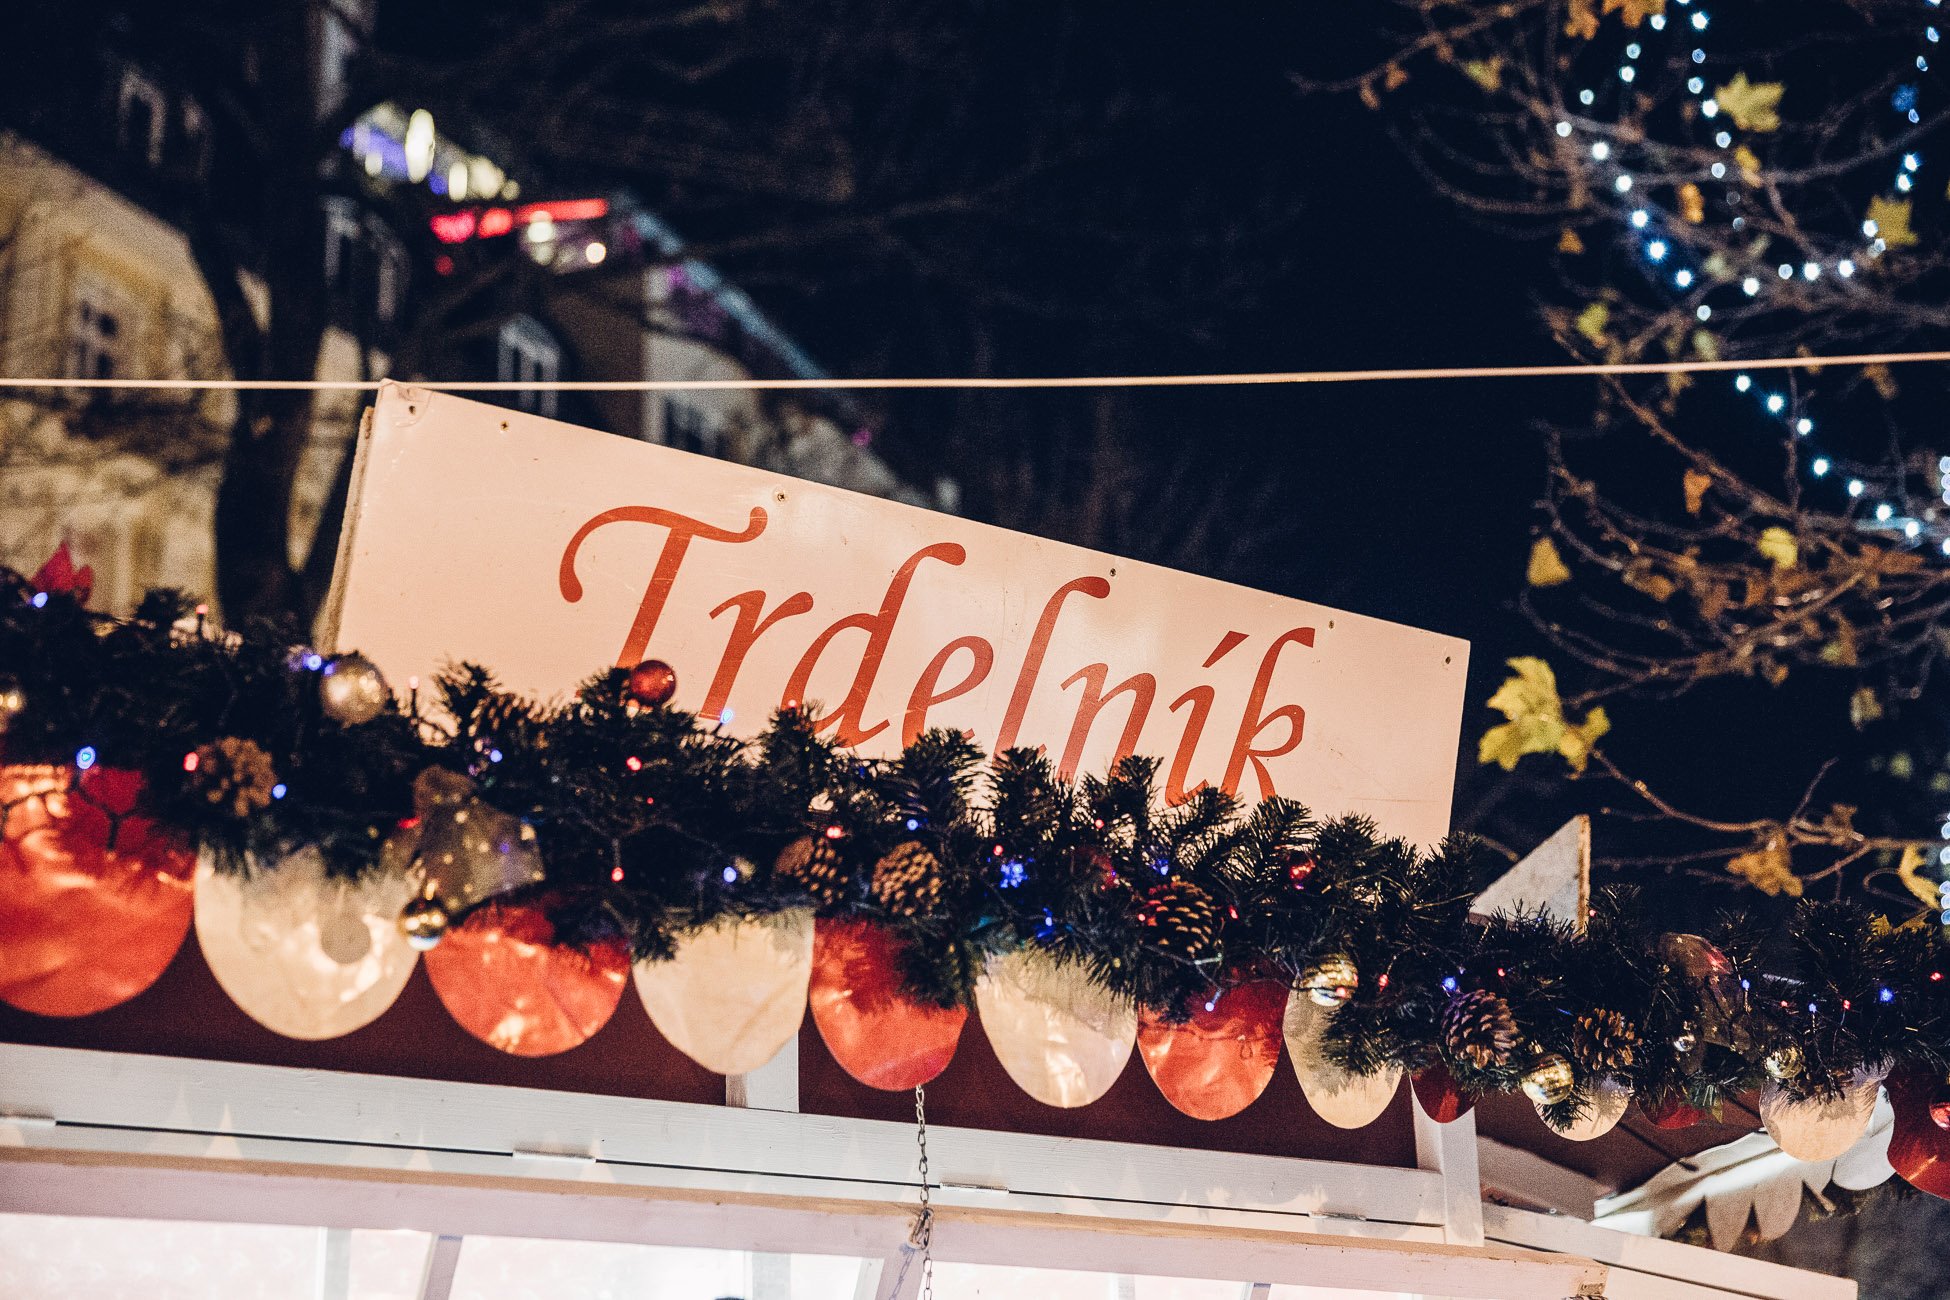 Trdelník at Christmas market Hviezdoslavovo námestie in Bratislava